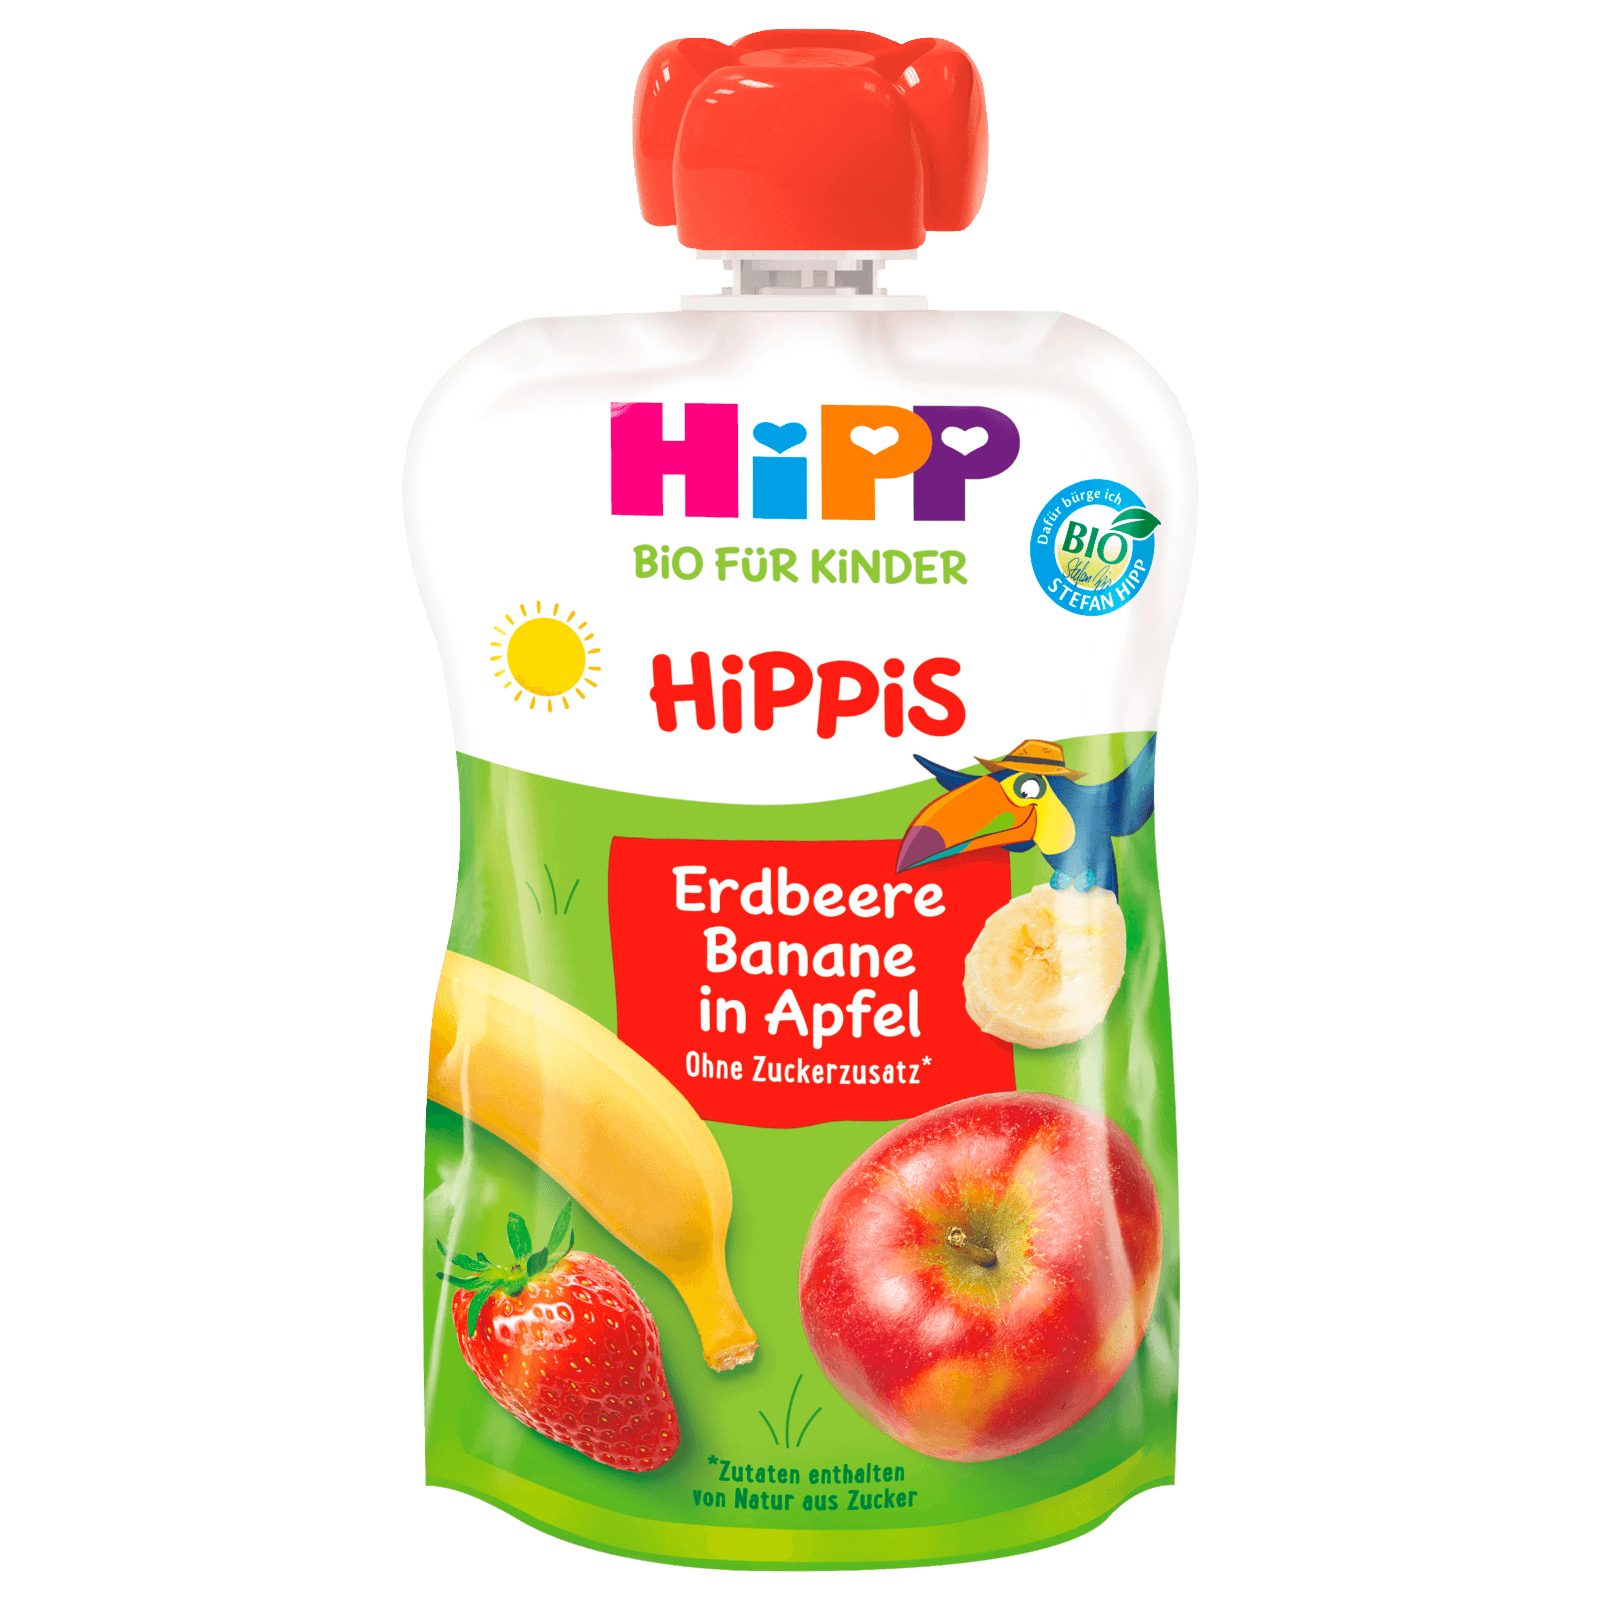 Hipp Hippis Ferdi Frosch Bio Erdbeer-Banane in Apfel 100g